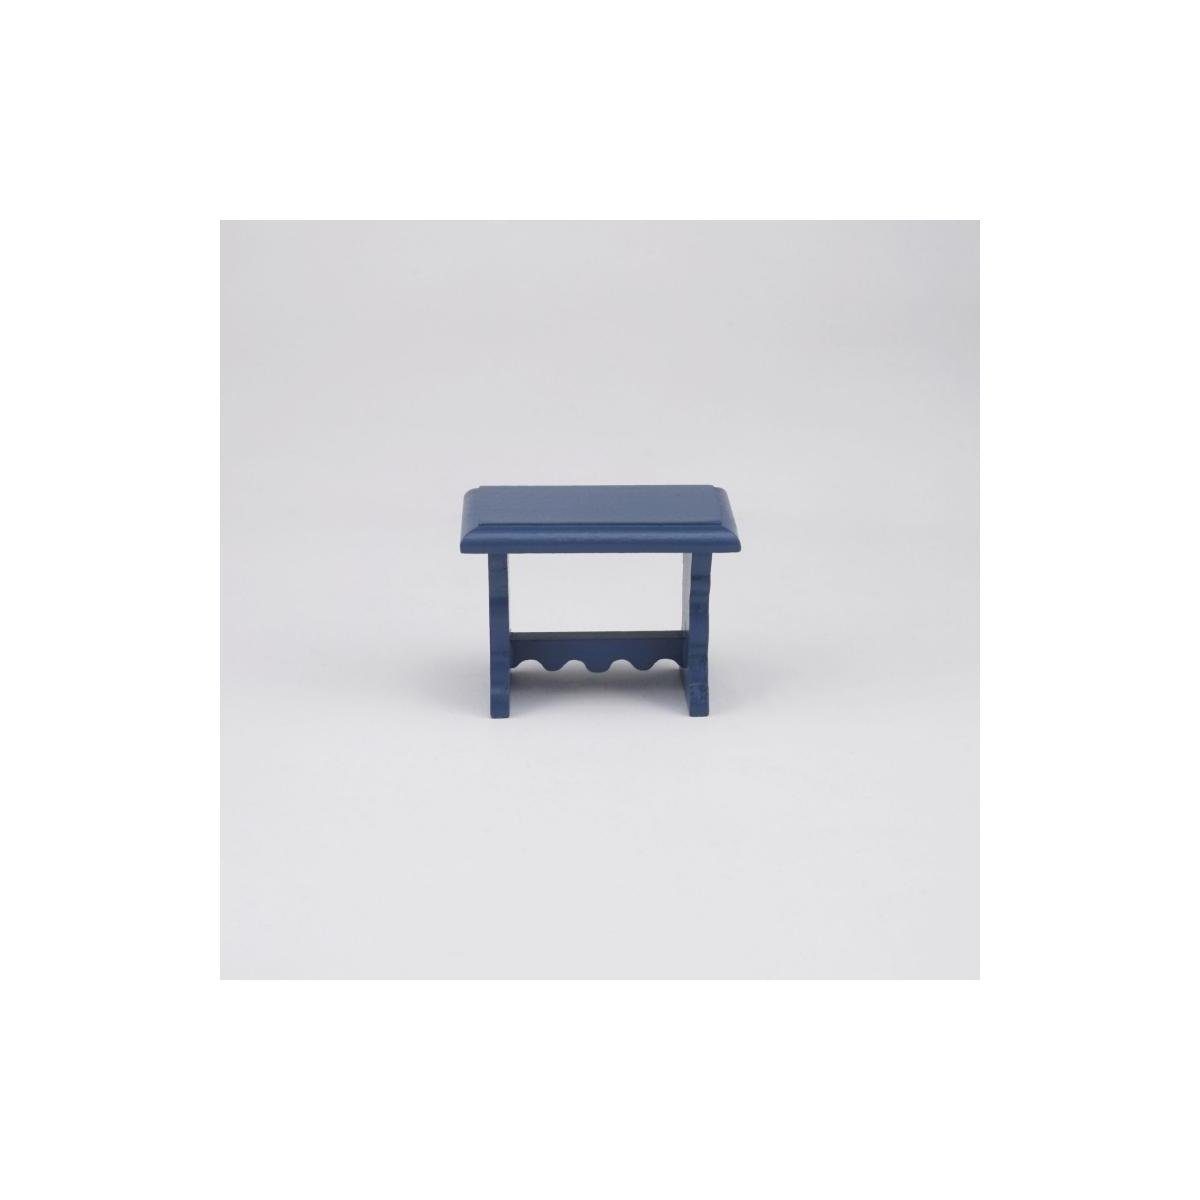 Reutter Porzellan Dekofigur 001.505/9 - Miniatur, kleiner blauer Beistelltisch, leer